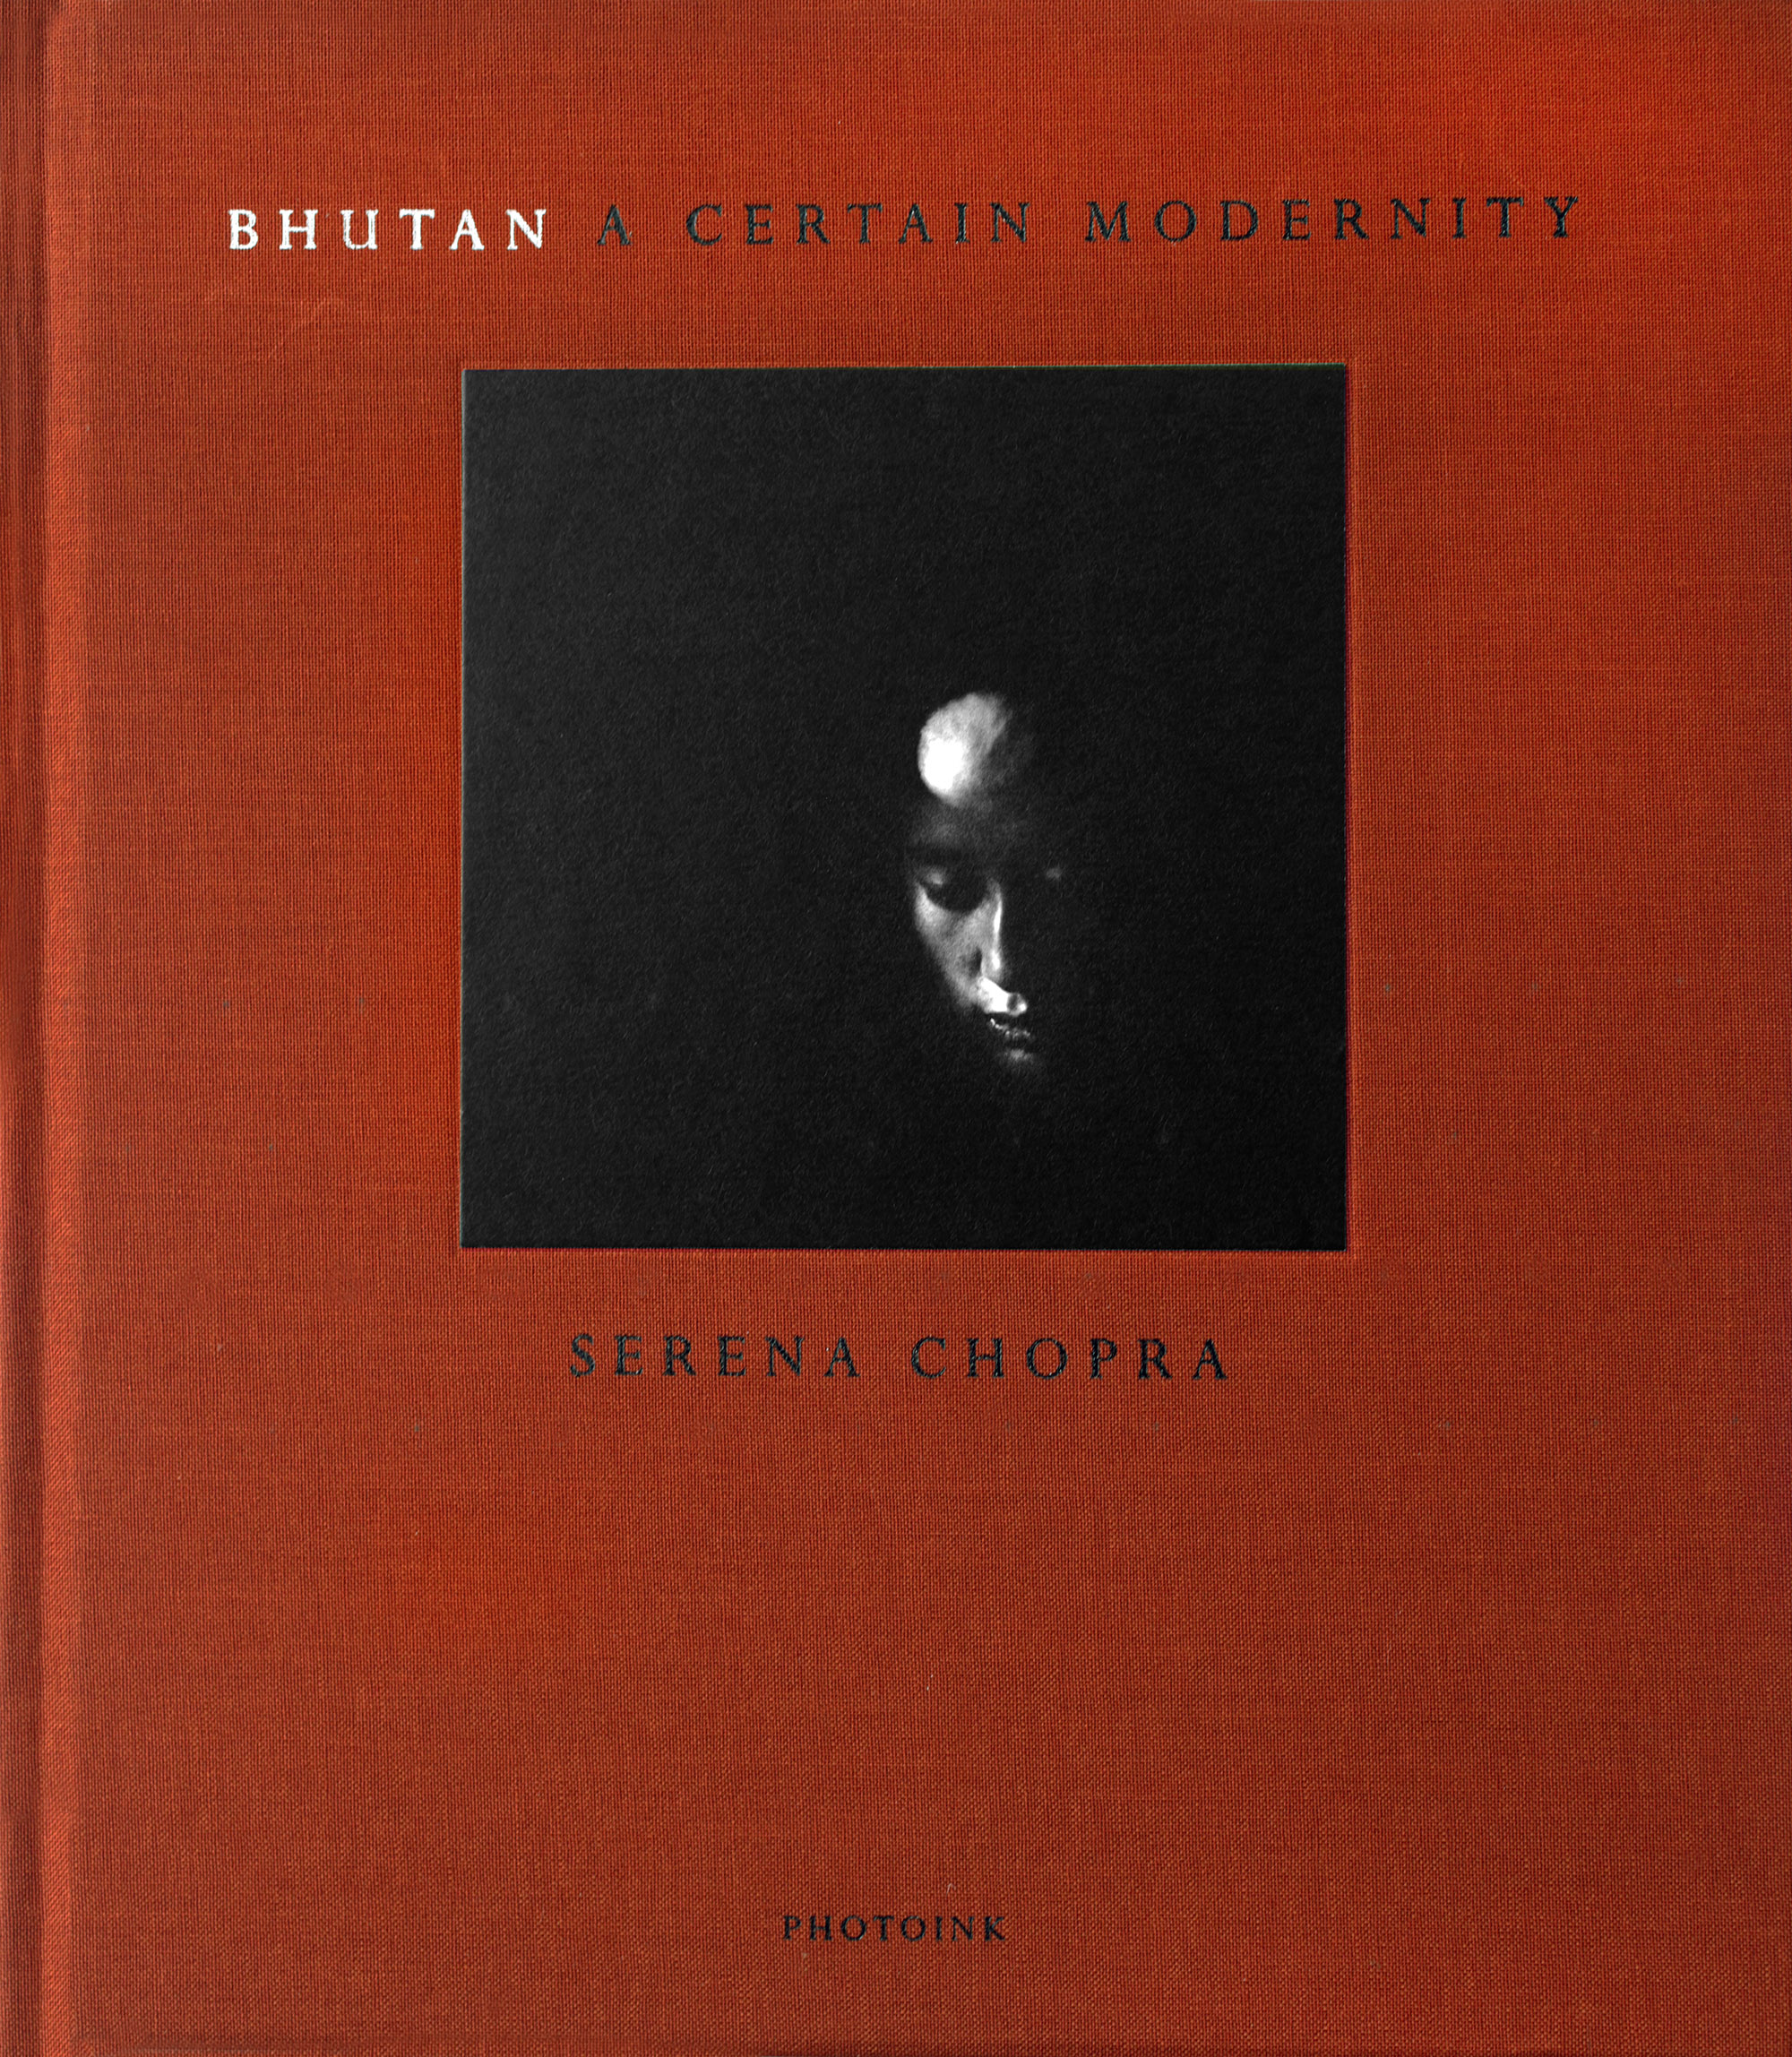 BHUTAN, A CERTAIN MODERNITY - 2006